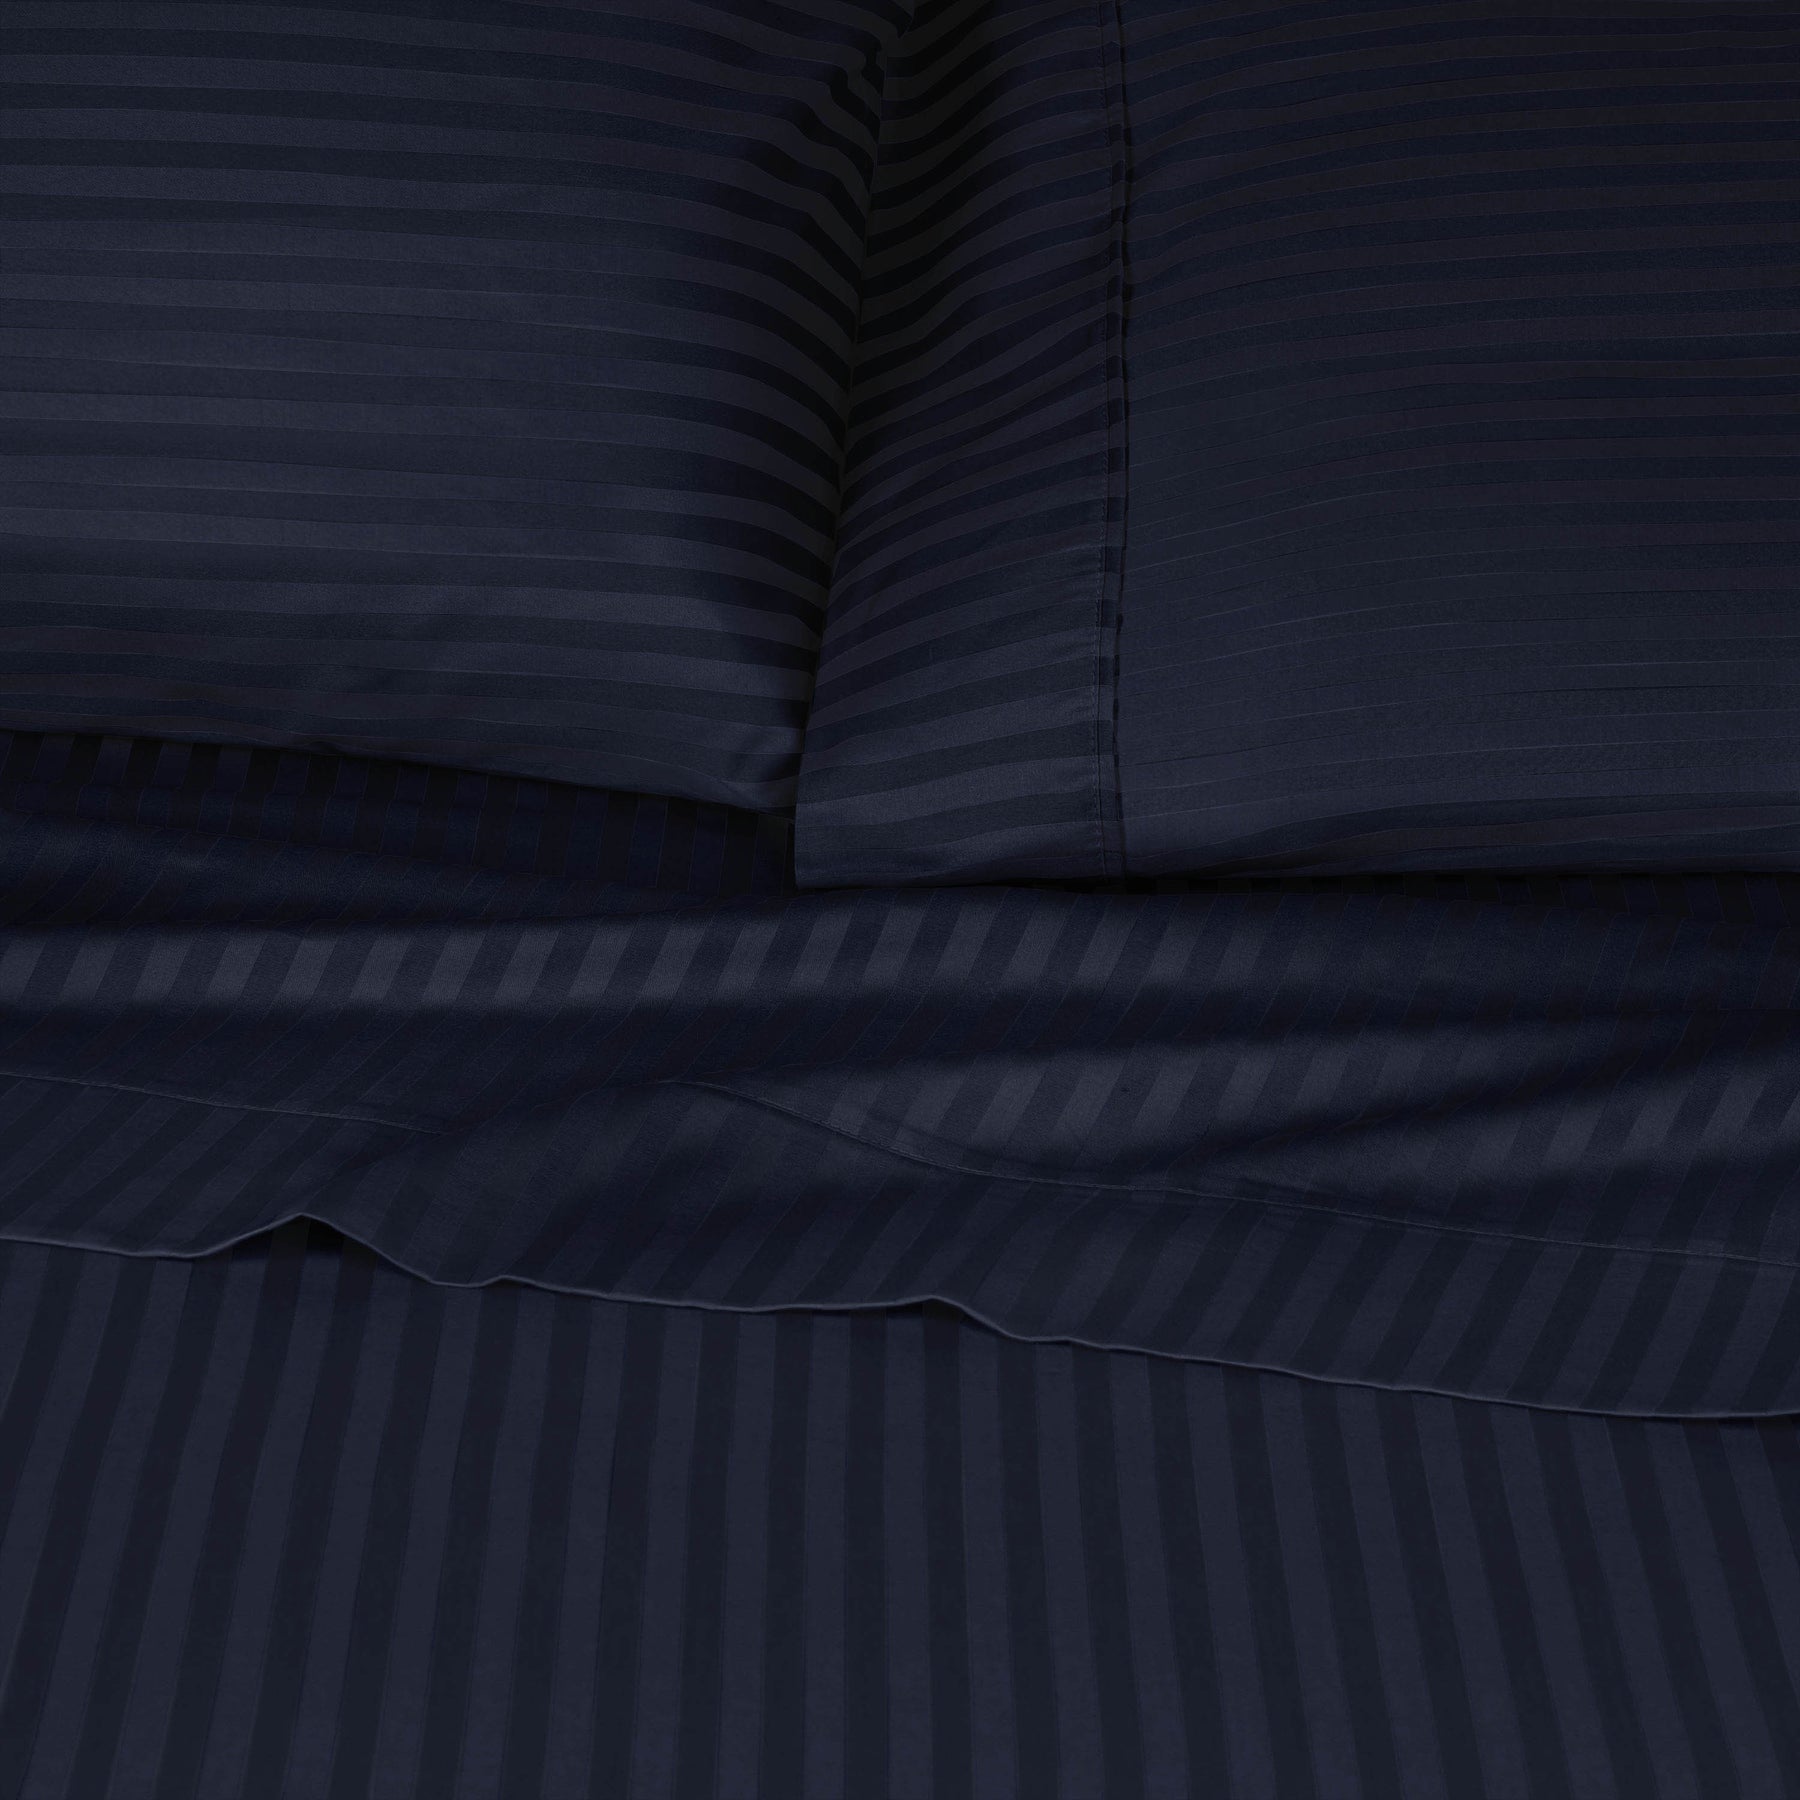 Superior 300 Thread Count Premium Egyptian Cotton Stripe Sheet Set - Navy Blue